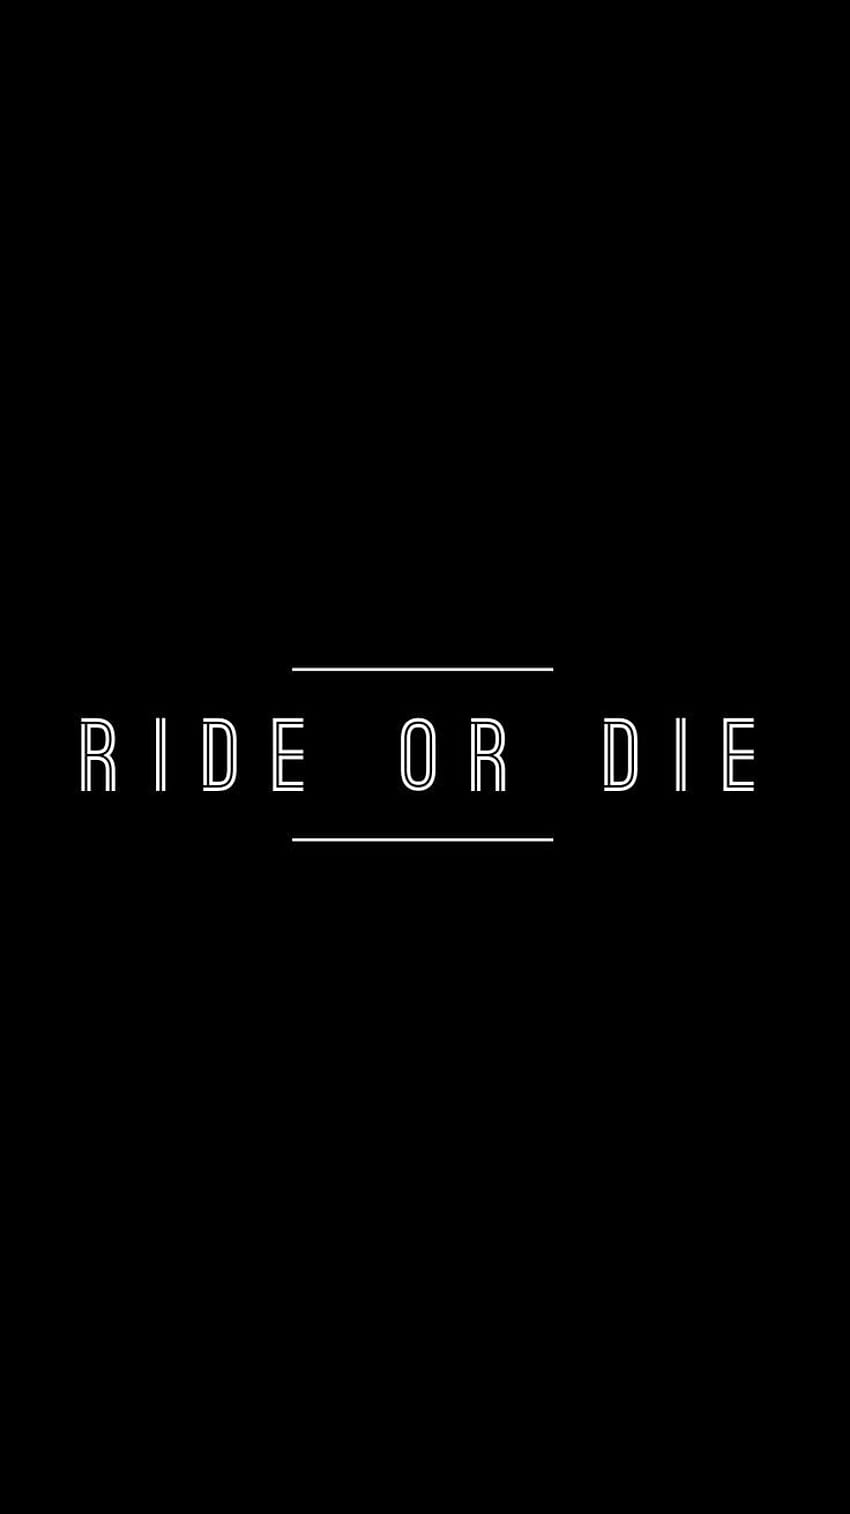 Ride or die skull HD wallpapers  Pxfuel